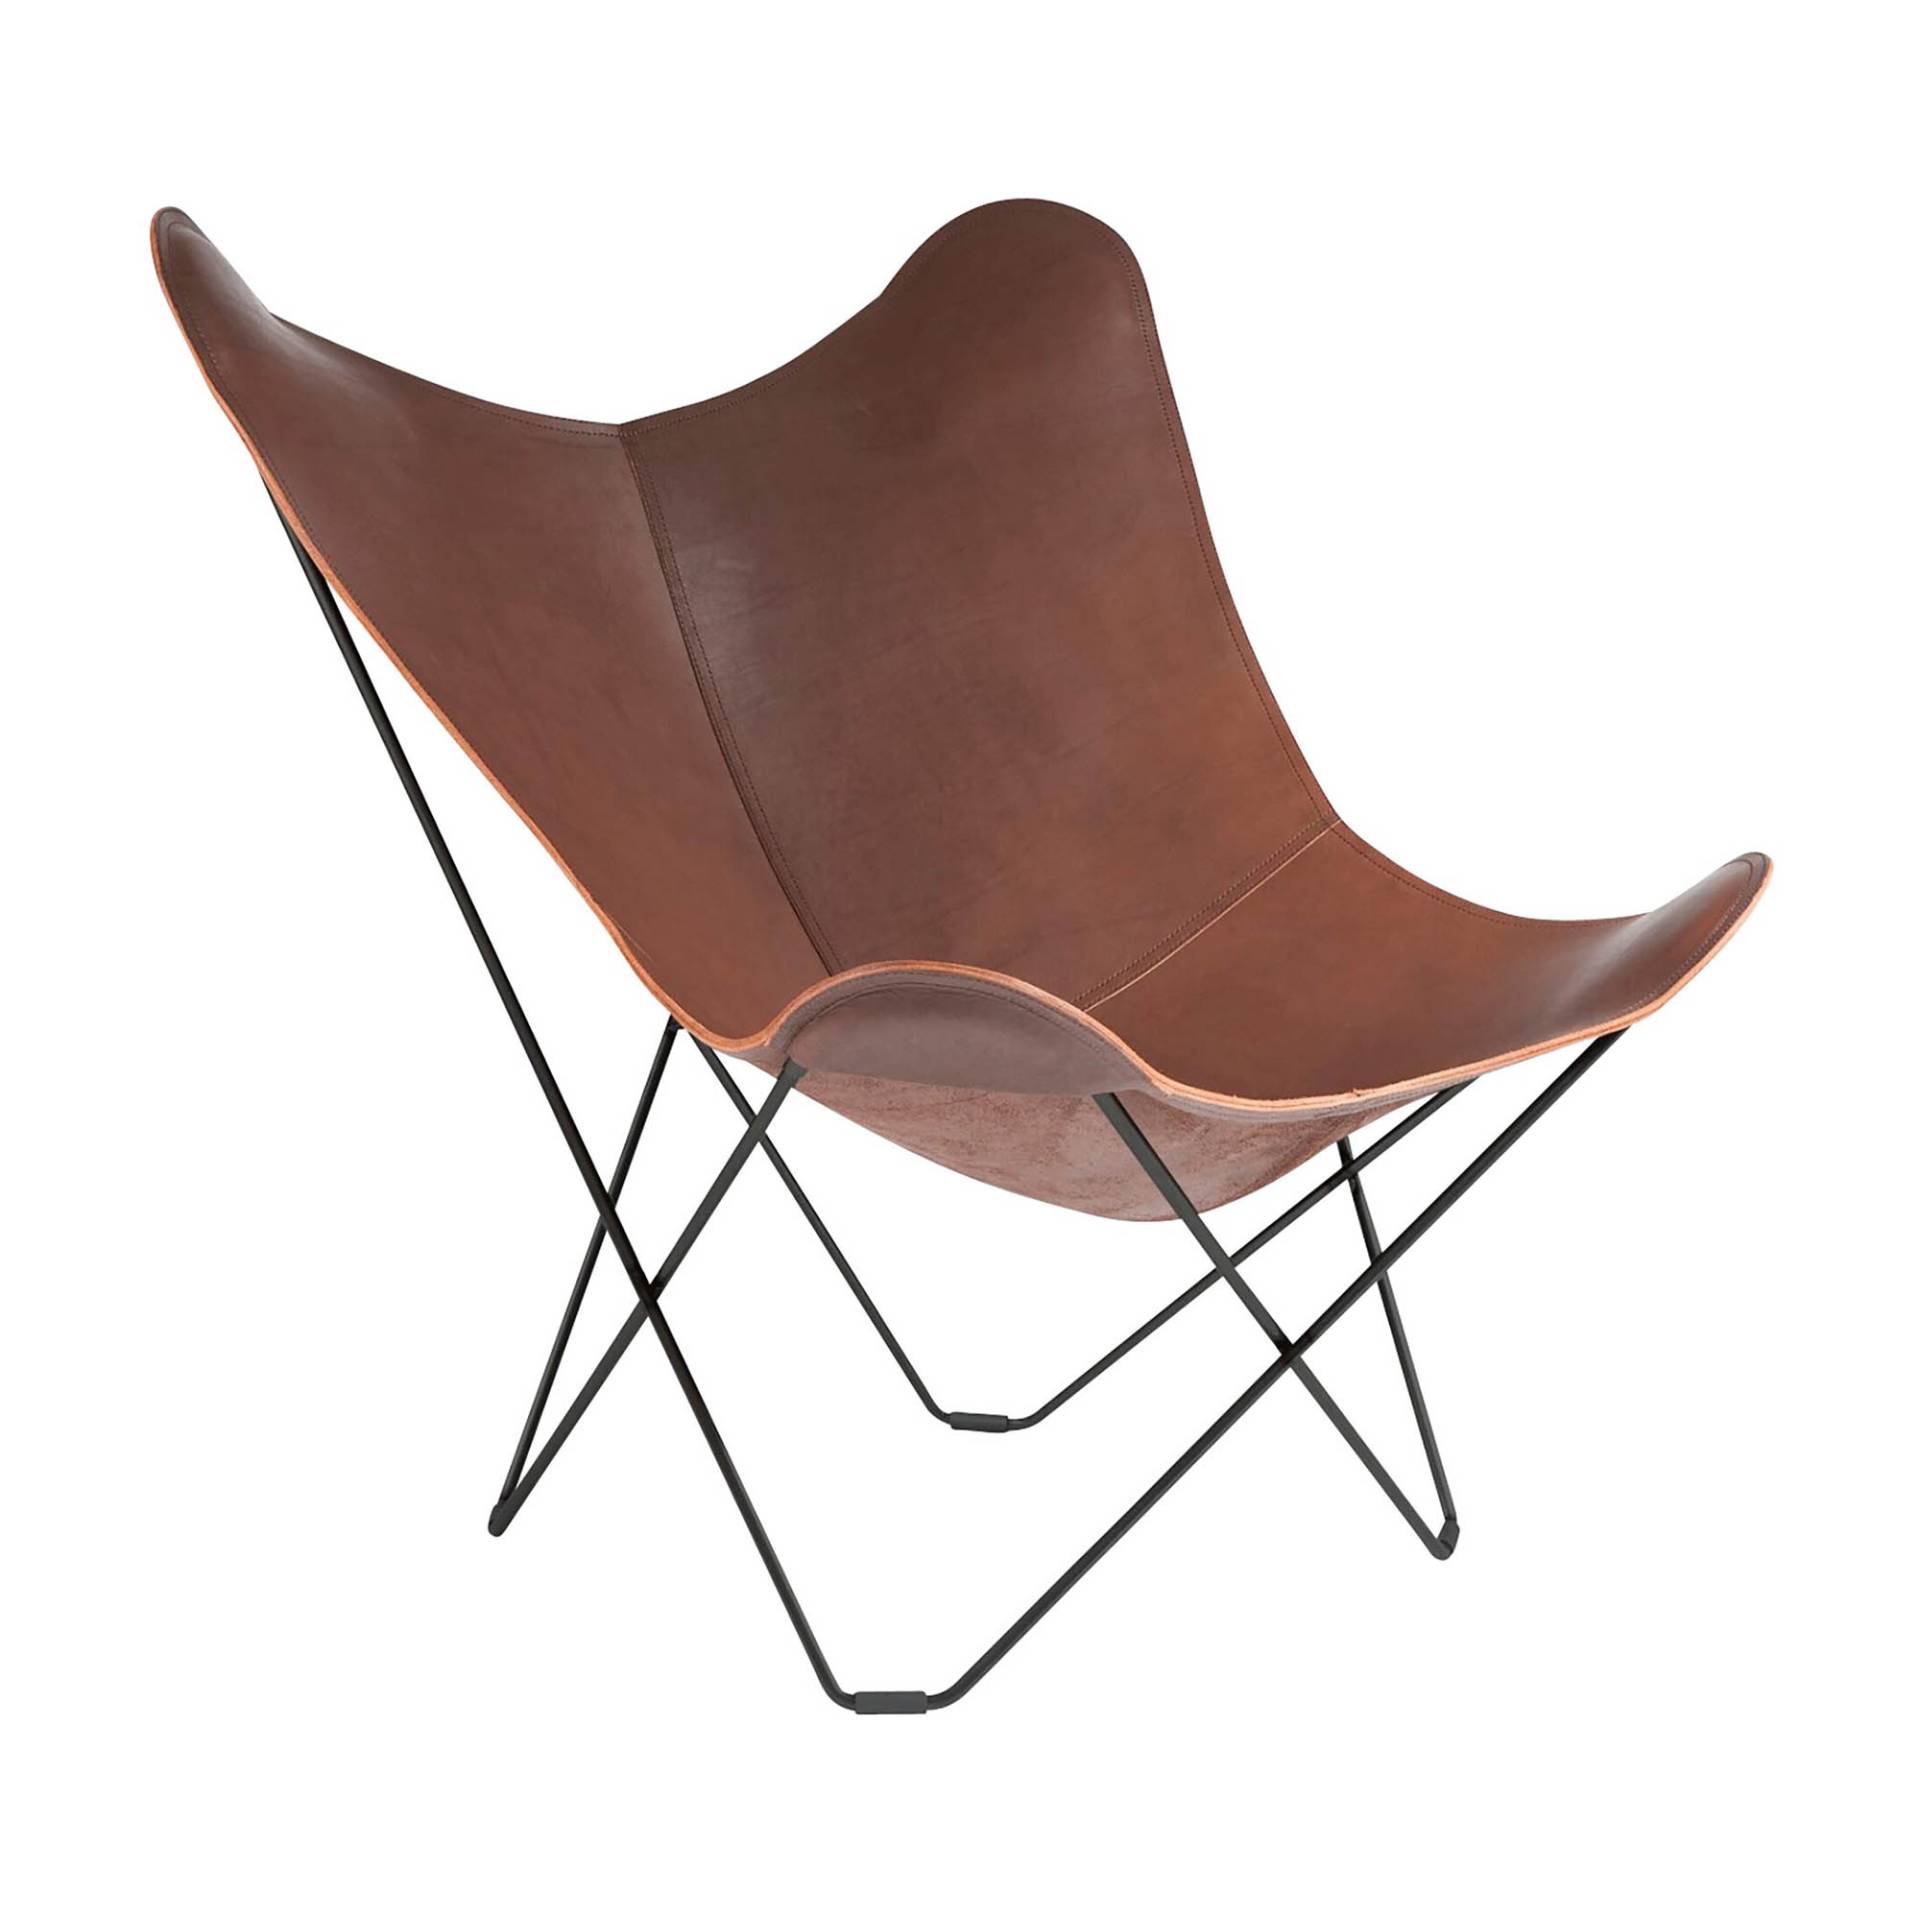 cuero - Pampa Mariposa Butterfly Chair Sessel - schokoladenbraun/Leder Chocolate/BxHxT 87x92x86cm/Gestell schwarz von cuero